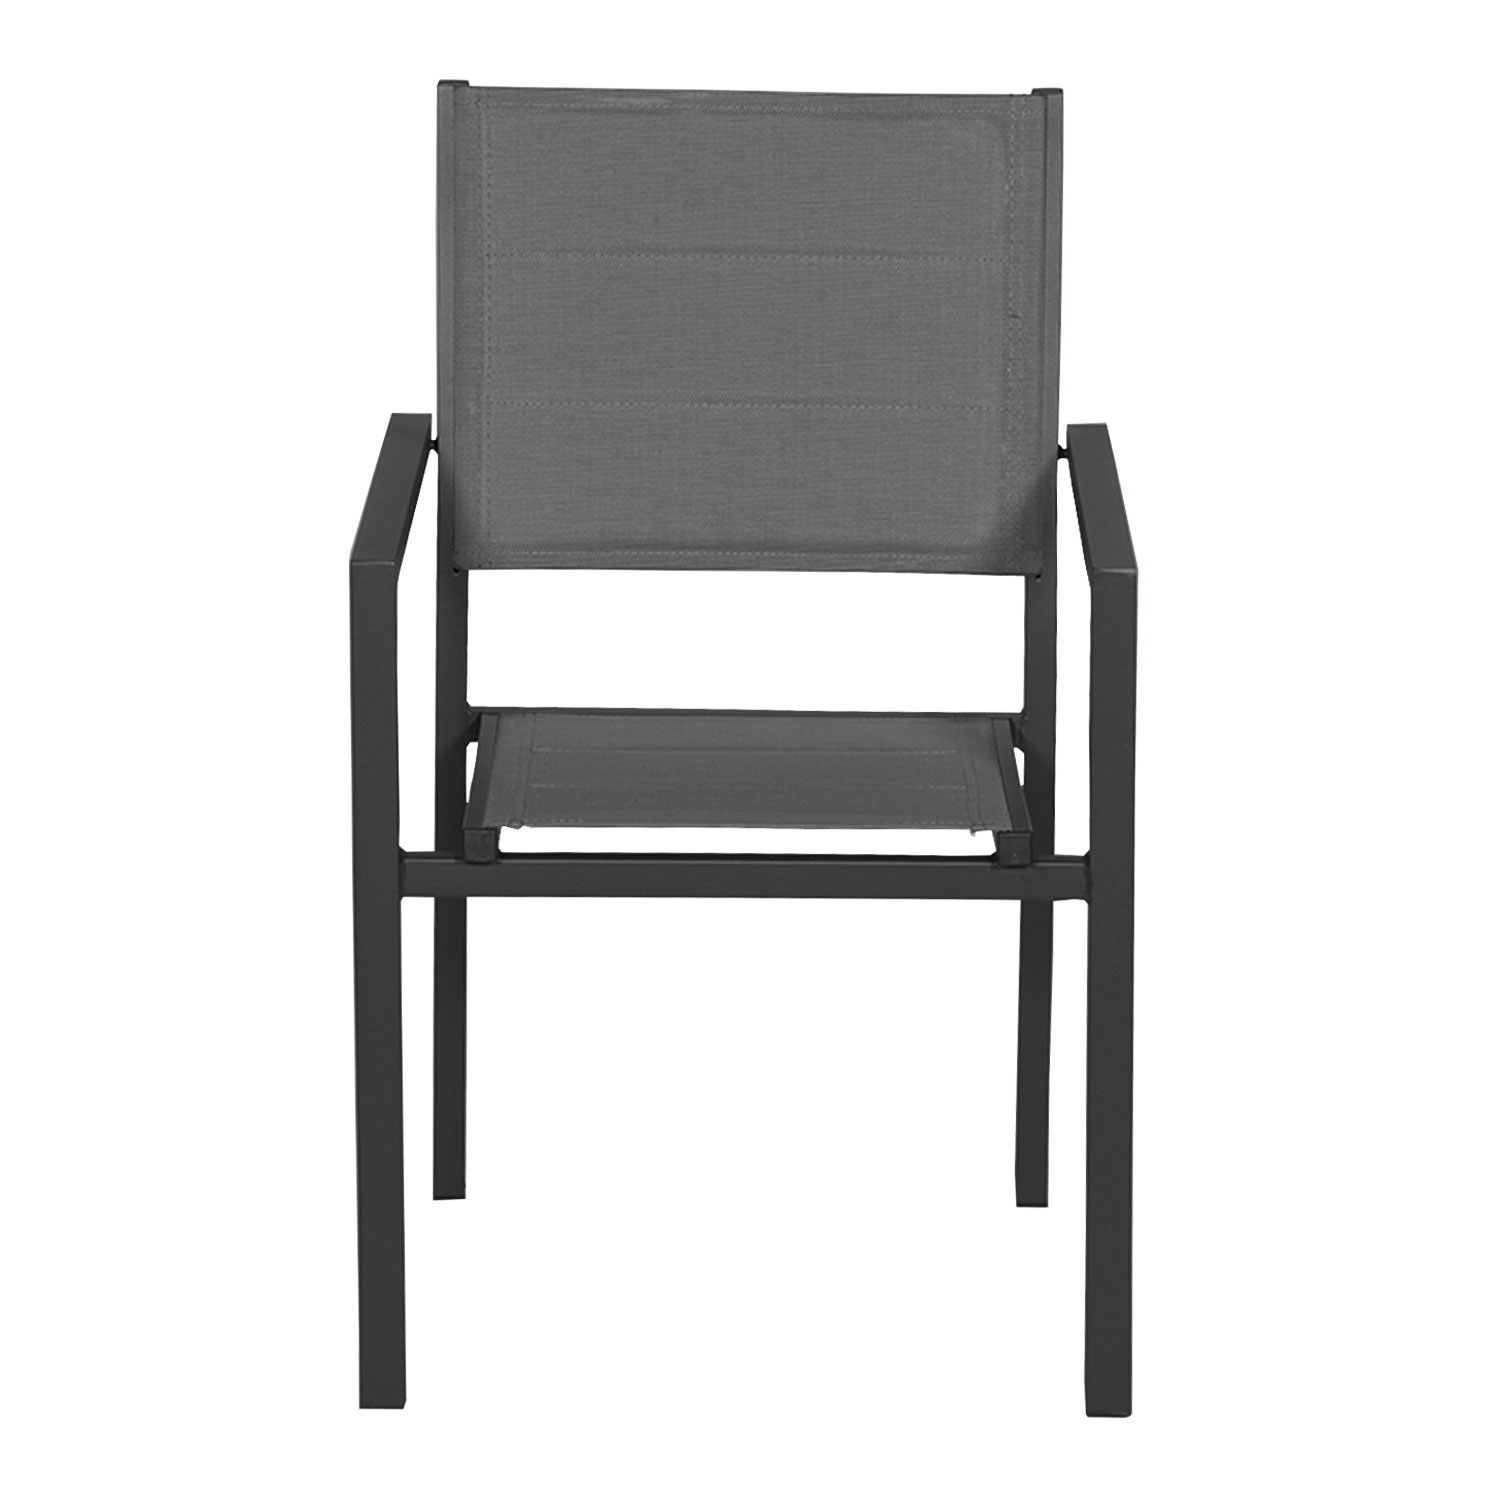 Satz von 6 gepolsterten Stühlen aus anthrazitfarbenem Aluminium - graues Textilene